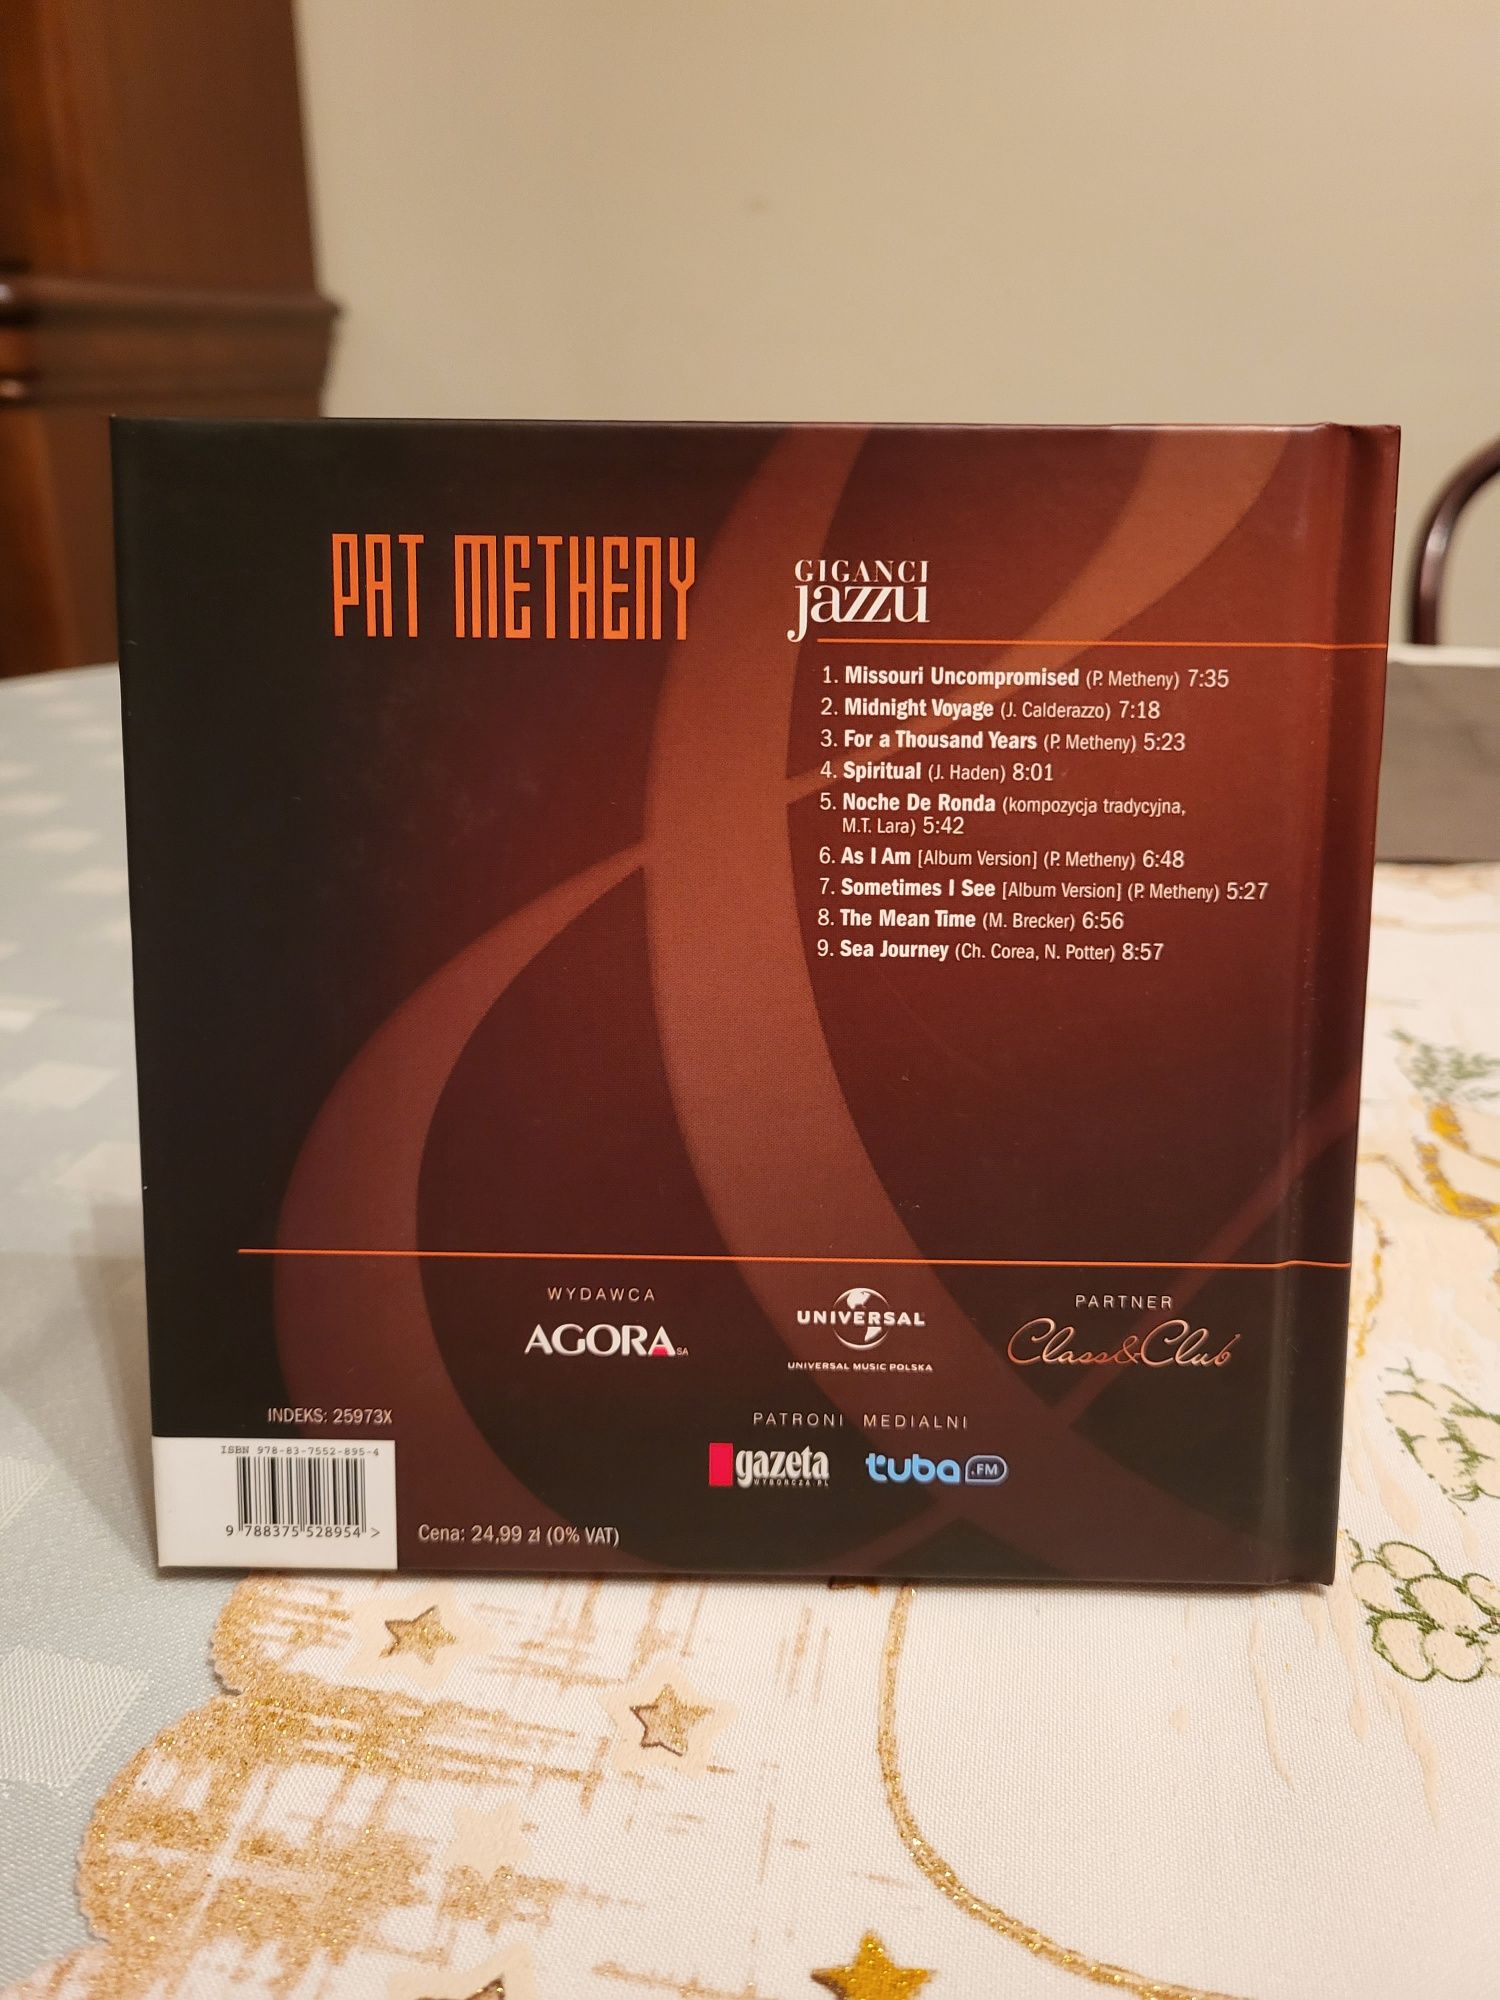 Pat Metheny giganci jazzu cz.16 cd